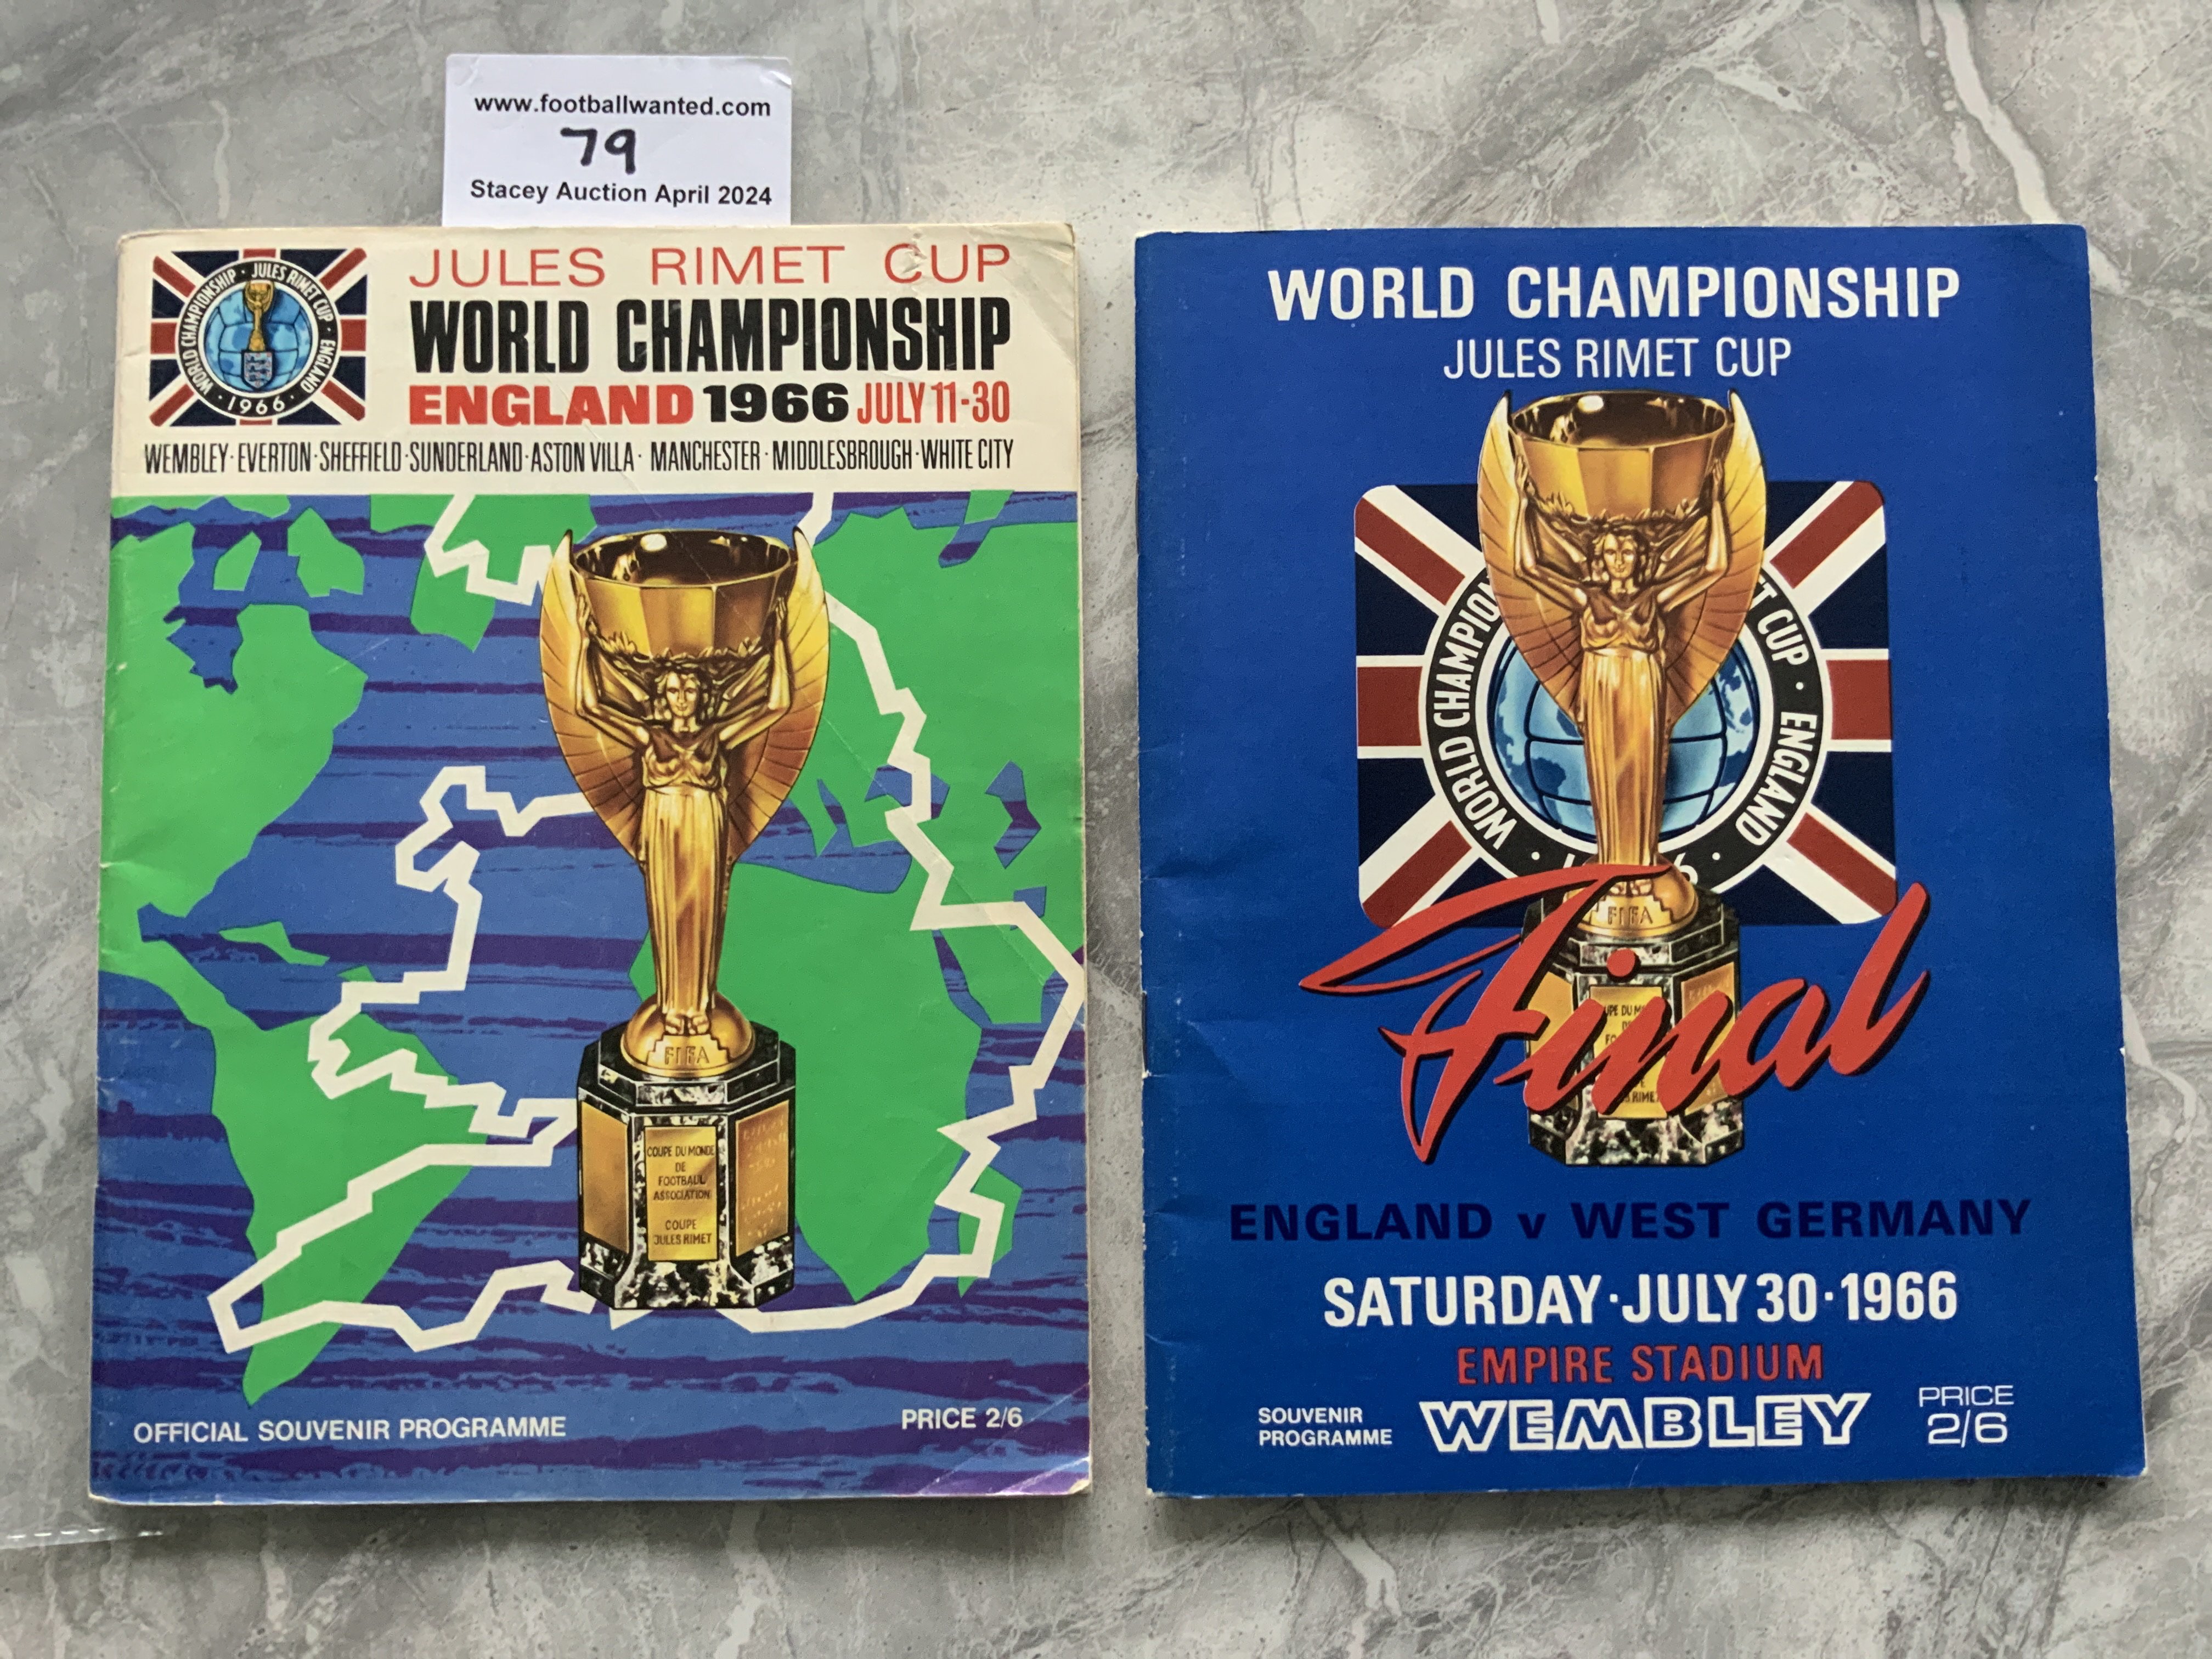 1966 World Cup Final Football Programme: Very good